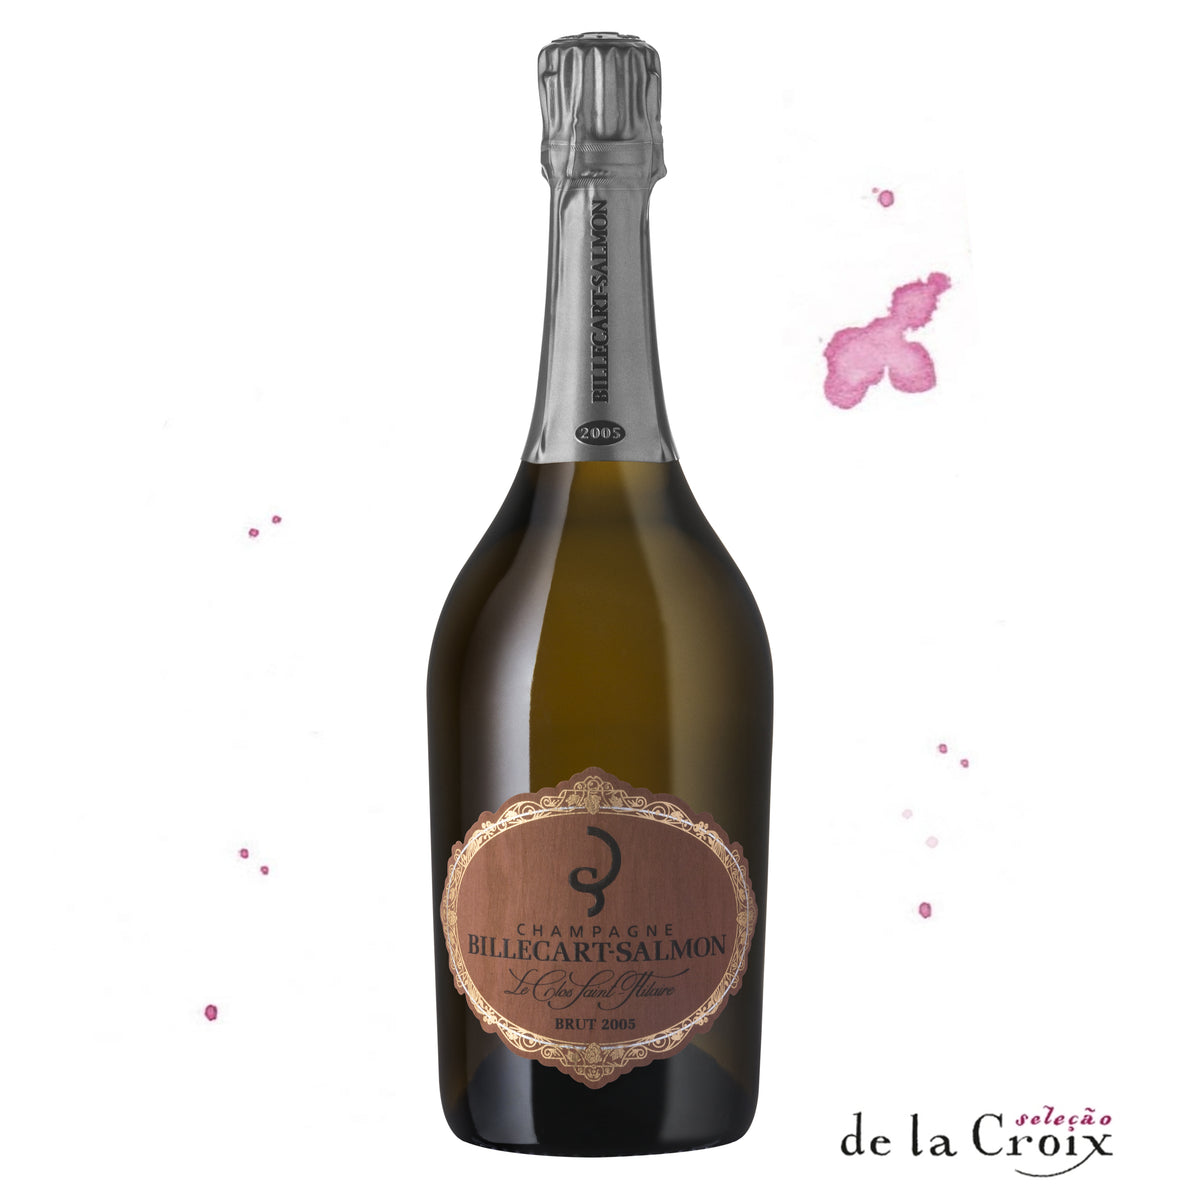 Champagne Billecart-Salmon Le Clos Saint-Hilaire Brut, 2005